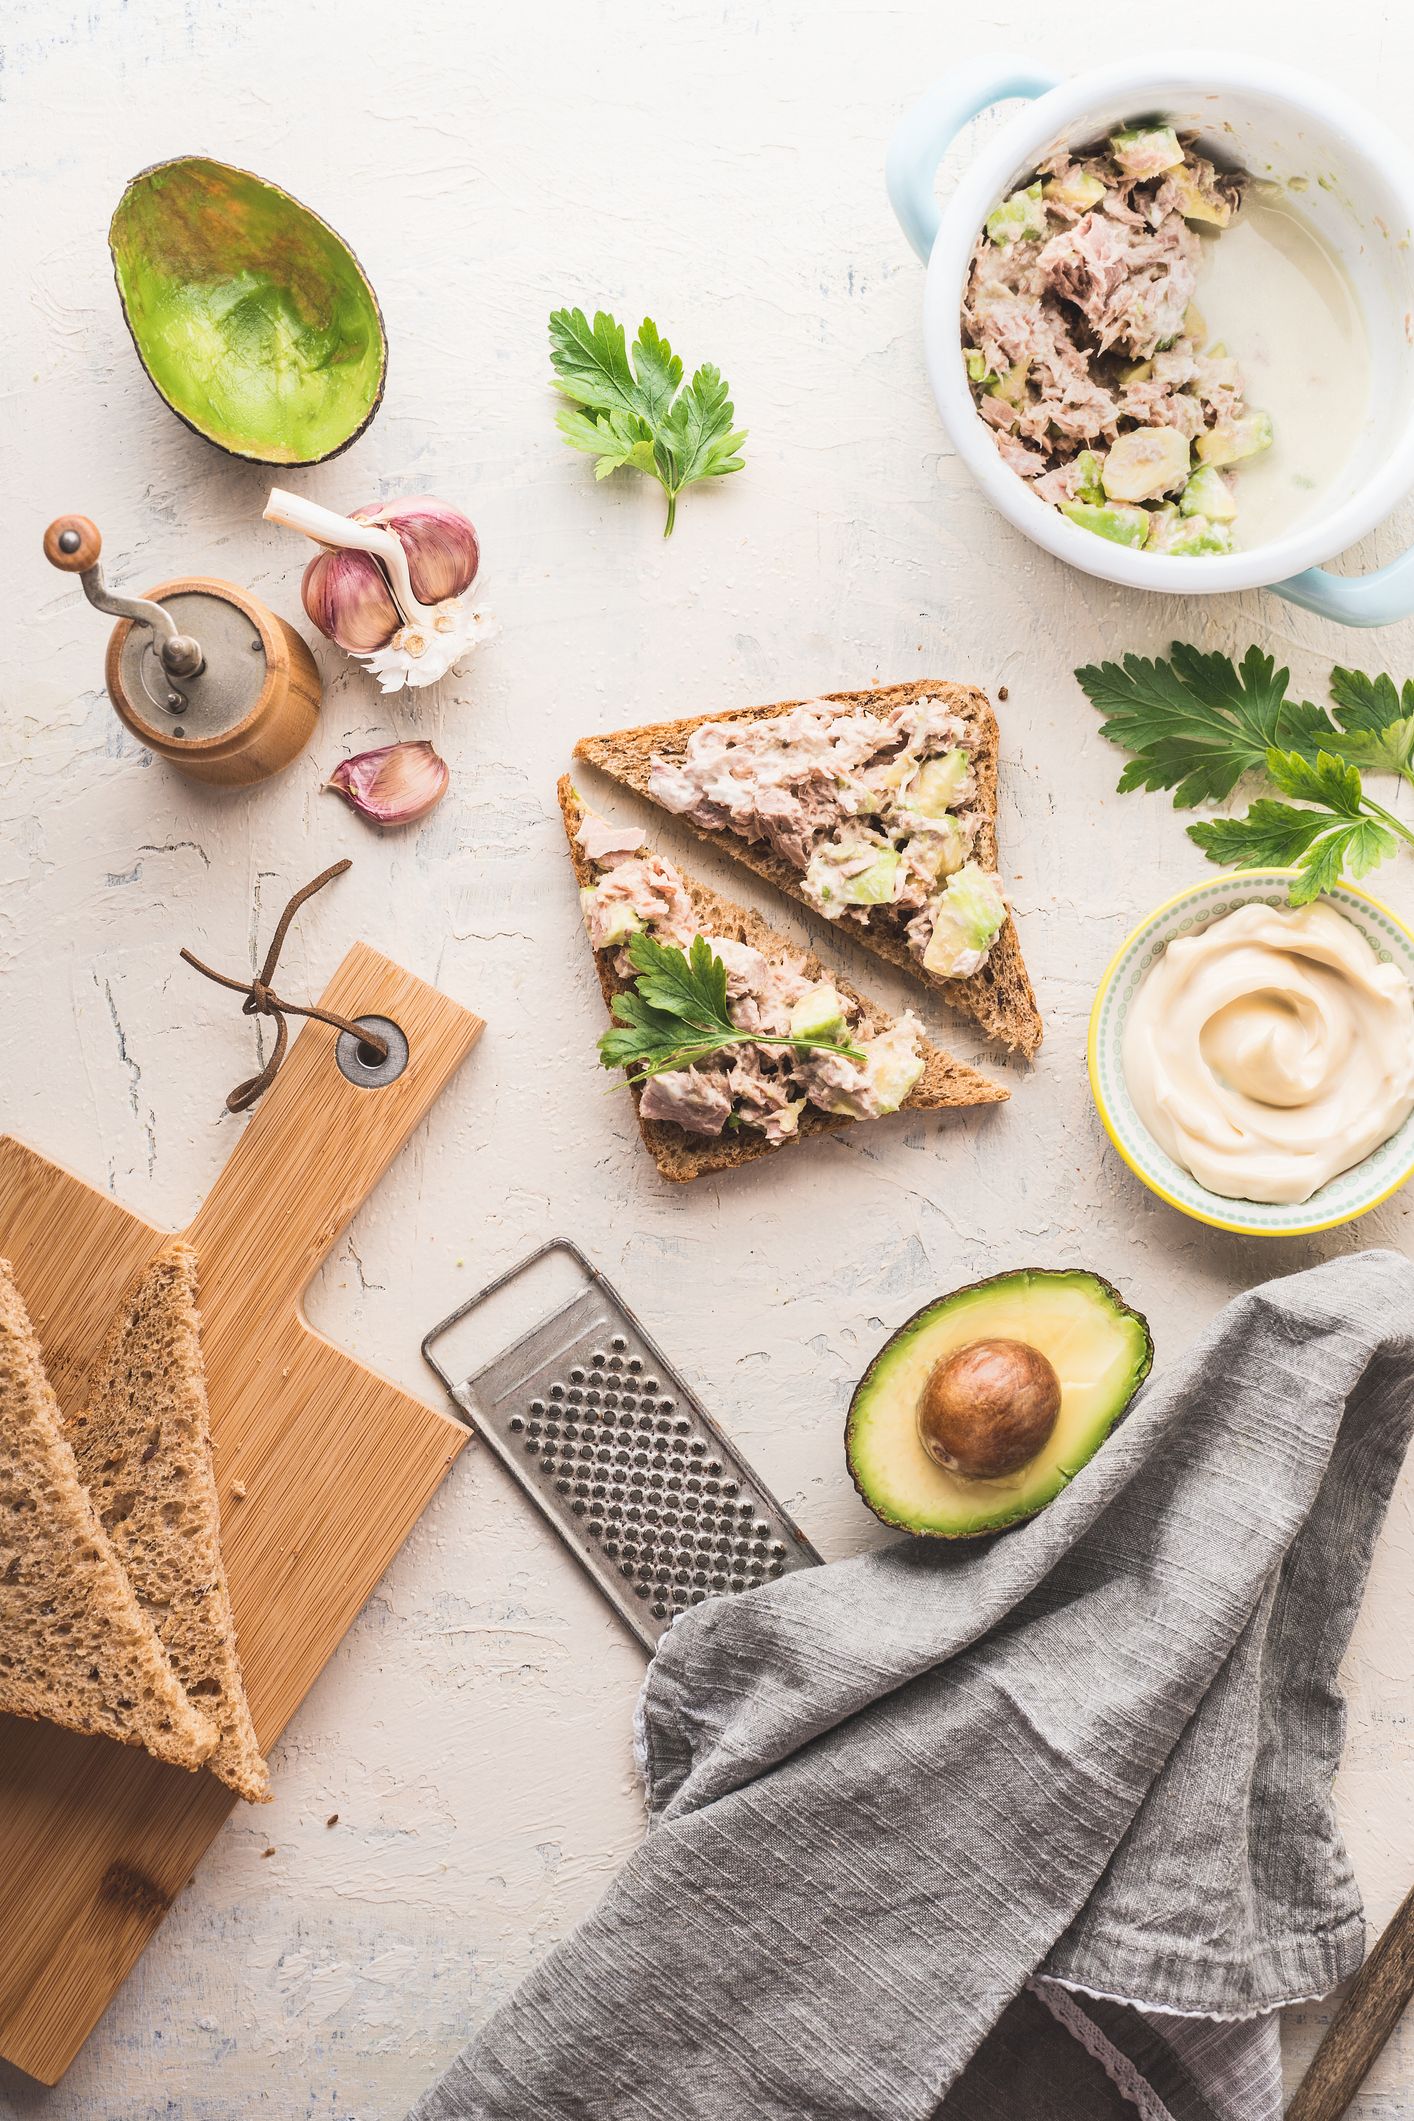 Recetario de Dulces, Desayunos y Snacks Saludables – Healthy Home